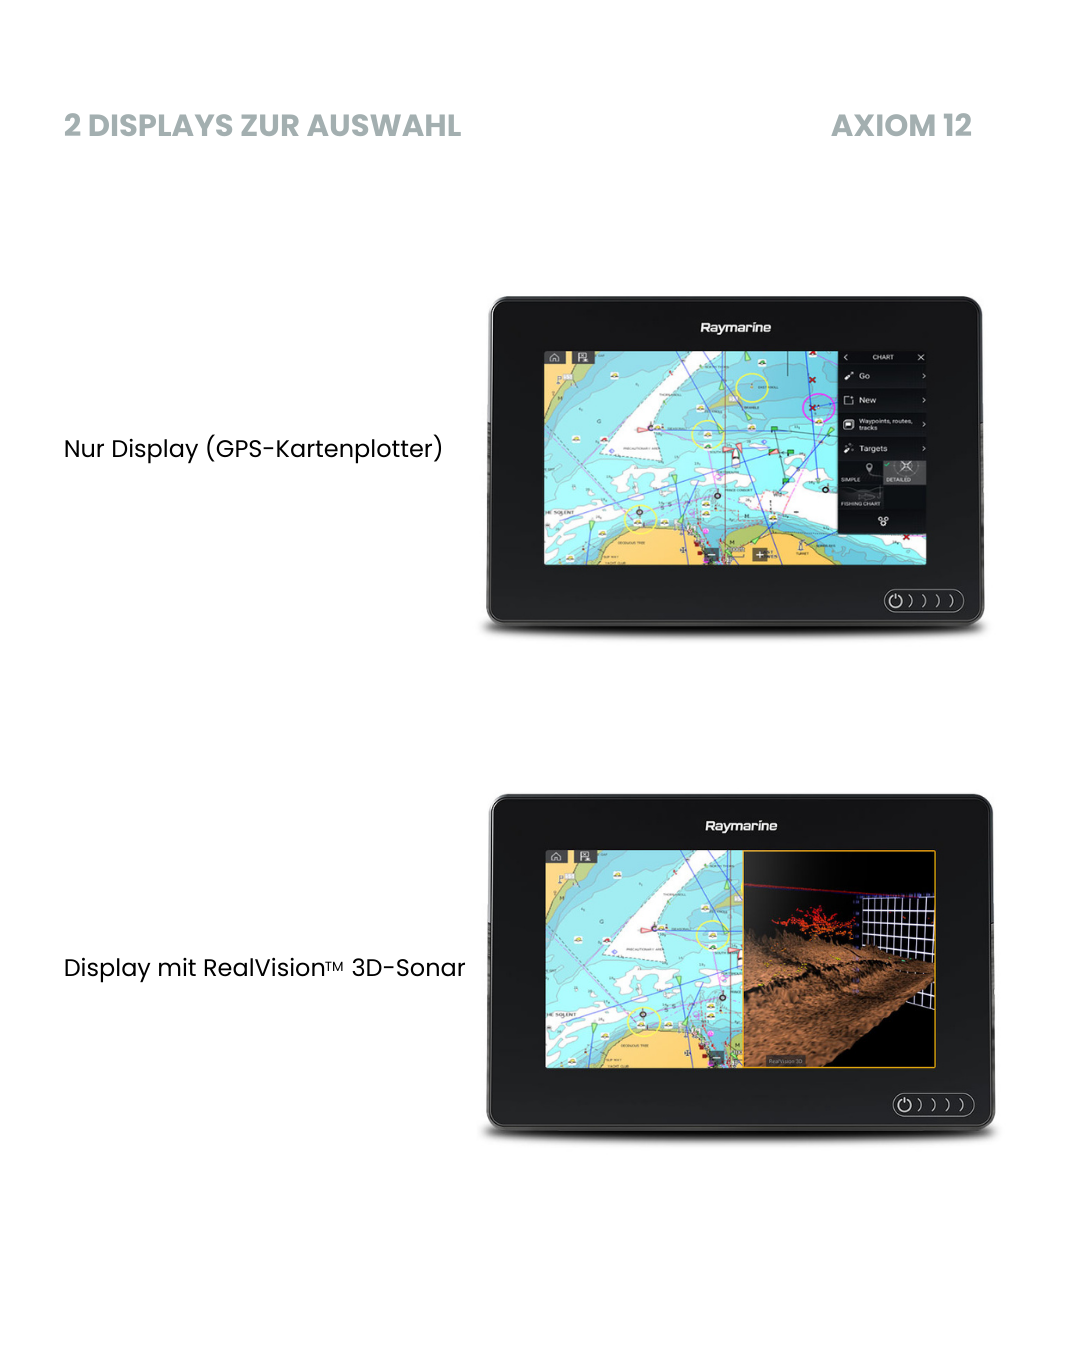 Raymarine Axiom 12 Displays. 2 Displays zur Auswahl. Nur Display mit GPS-Kartenplotter und Display mit RealVision 3D-Sonar.